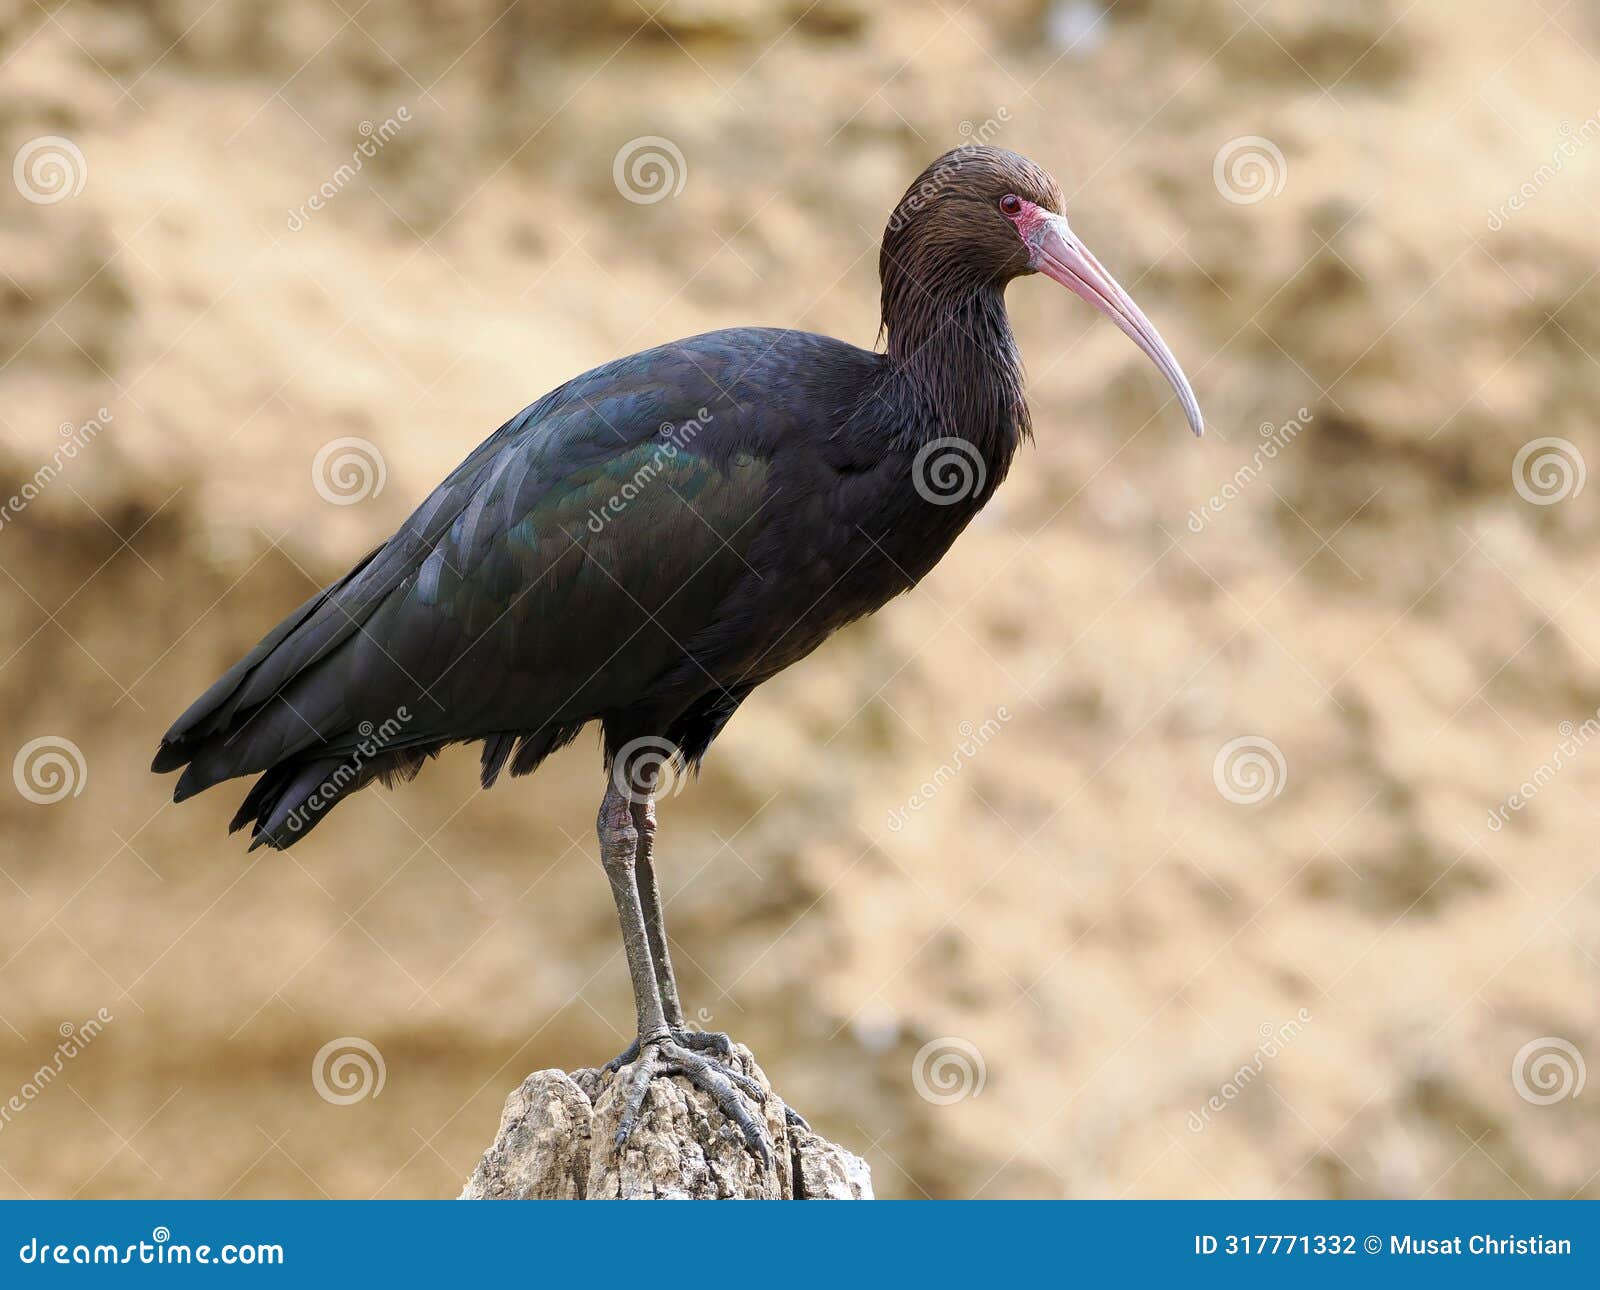 puna ibis standing on rock